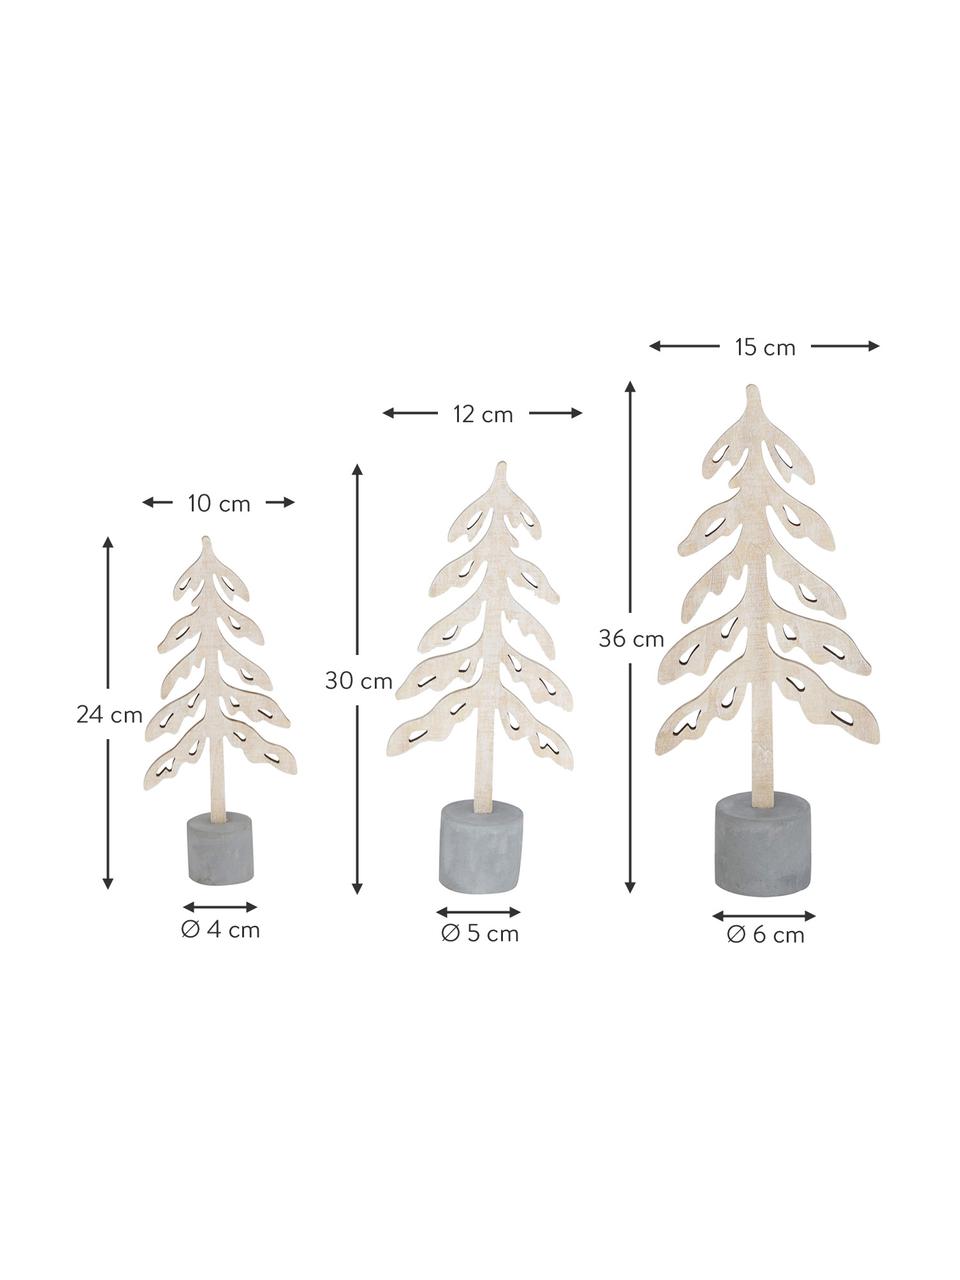 Deko-Bäume-Set Mattern, 3 Stück, Beton, Sperrholz, Grau, Helles Holz, Set mit verschiedenen Größen